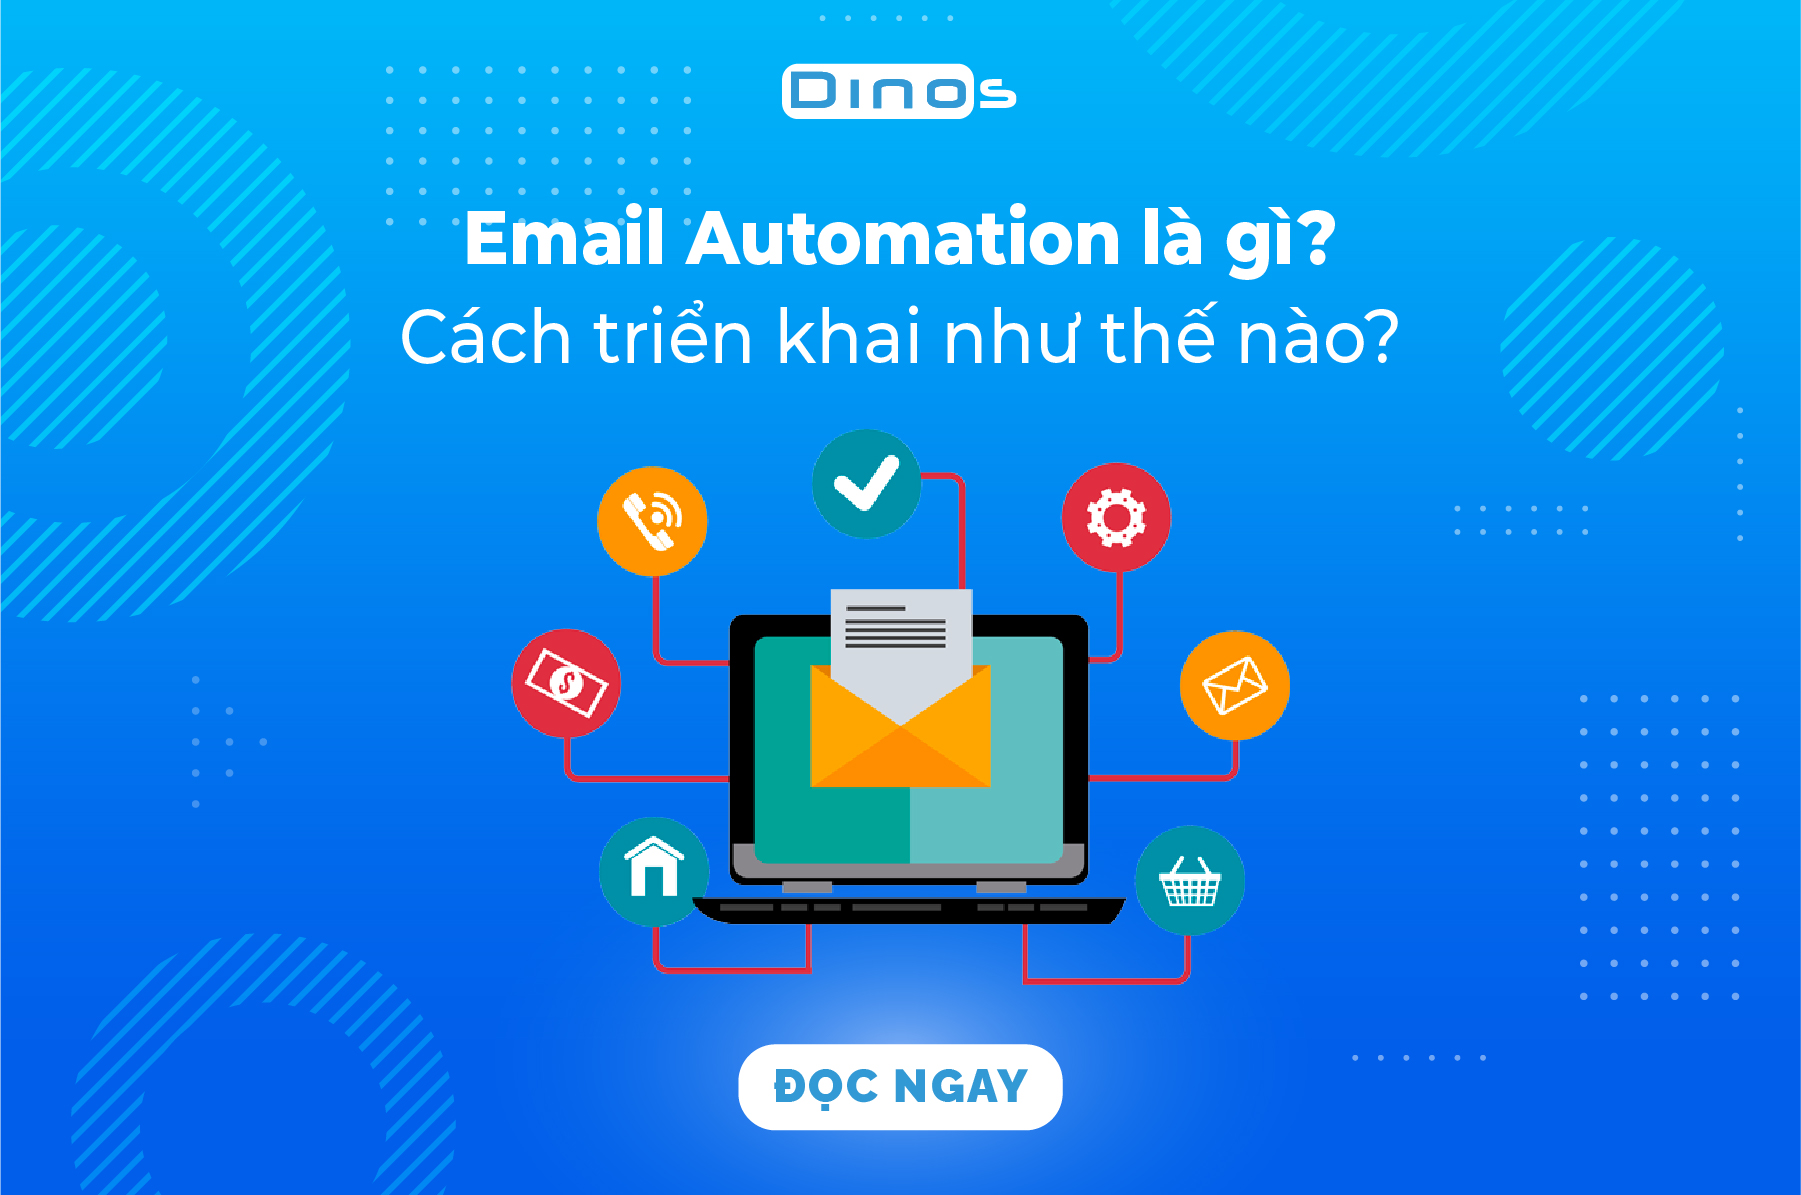 Email Automation là gì?